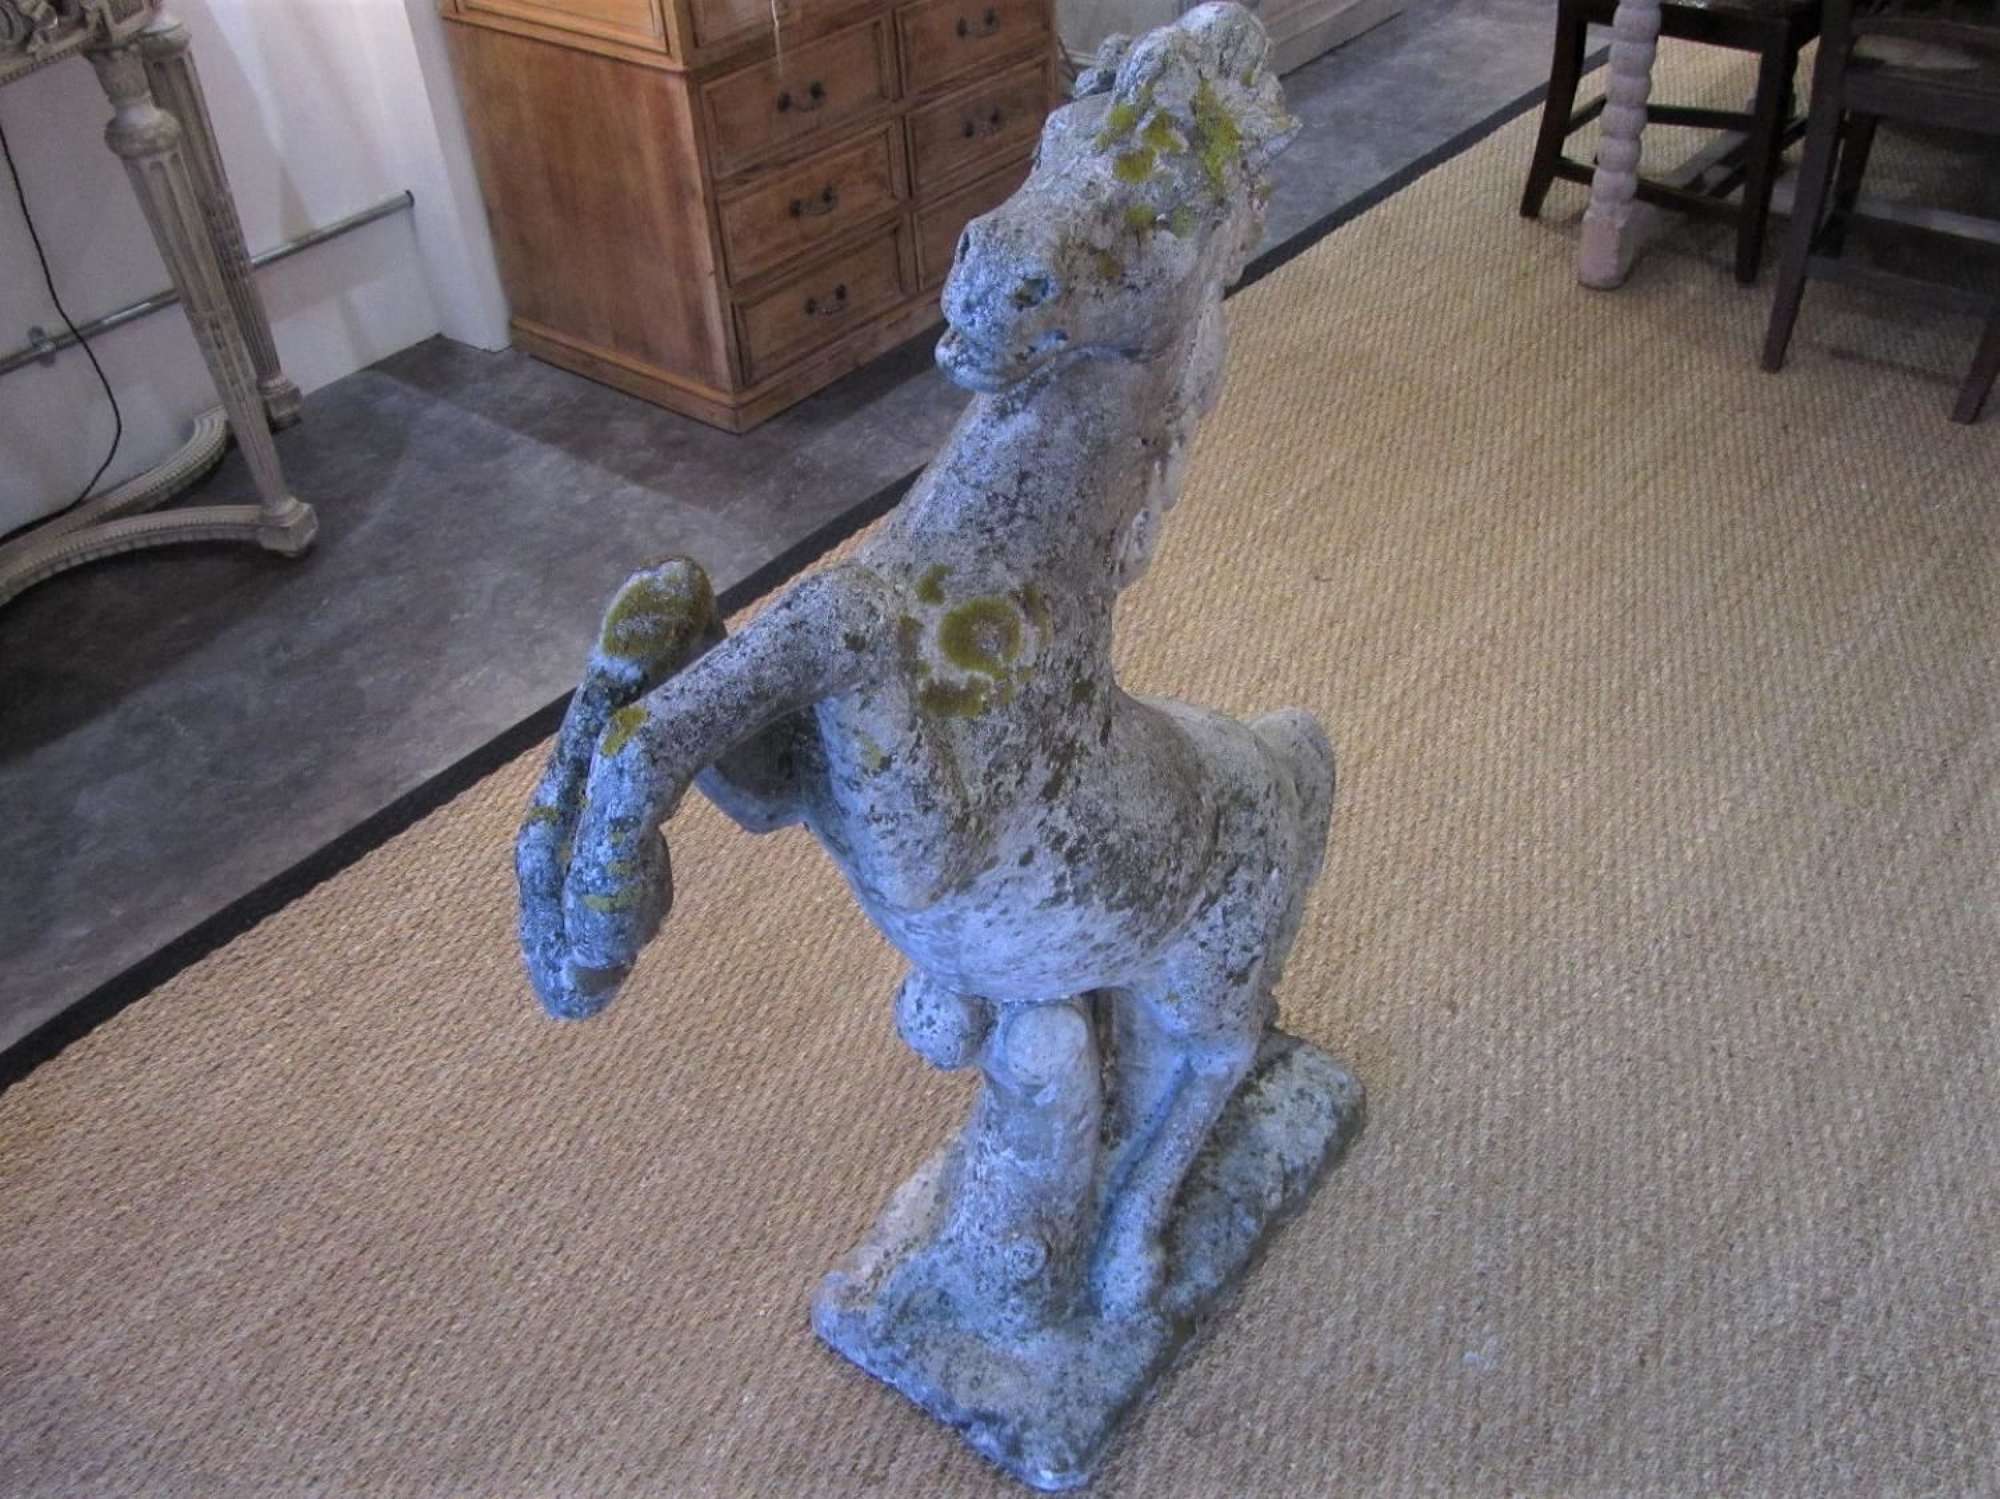 A prancing horse garden statue